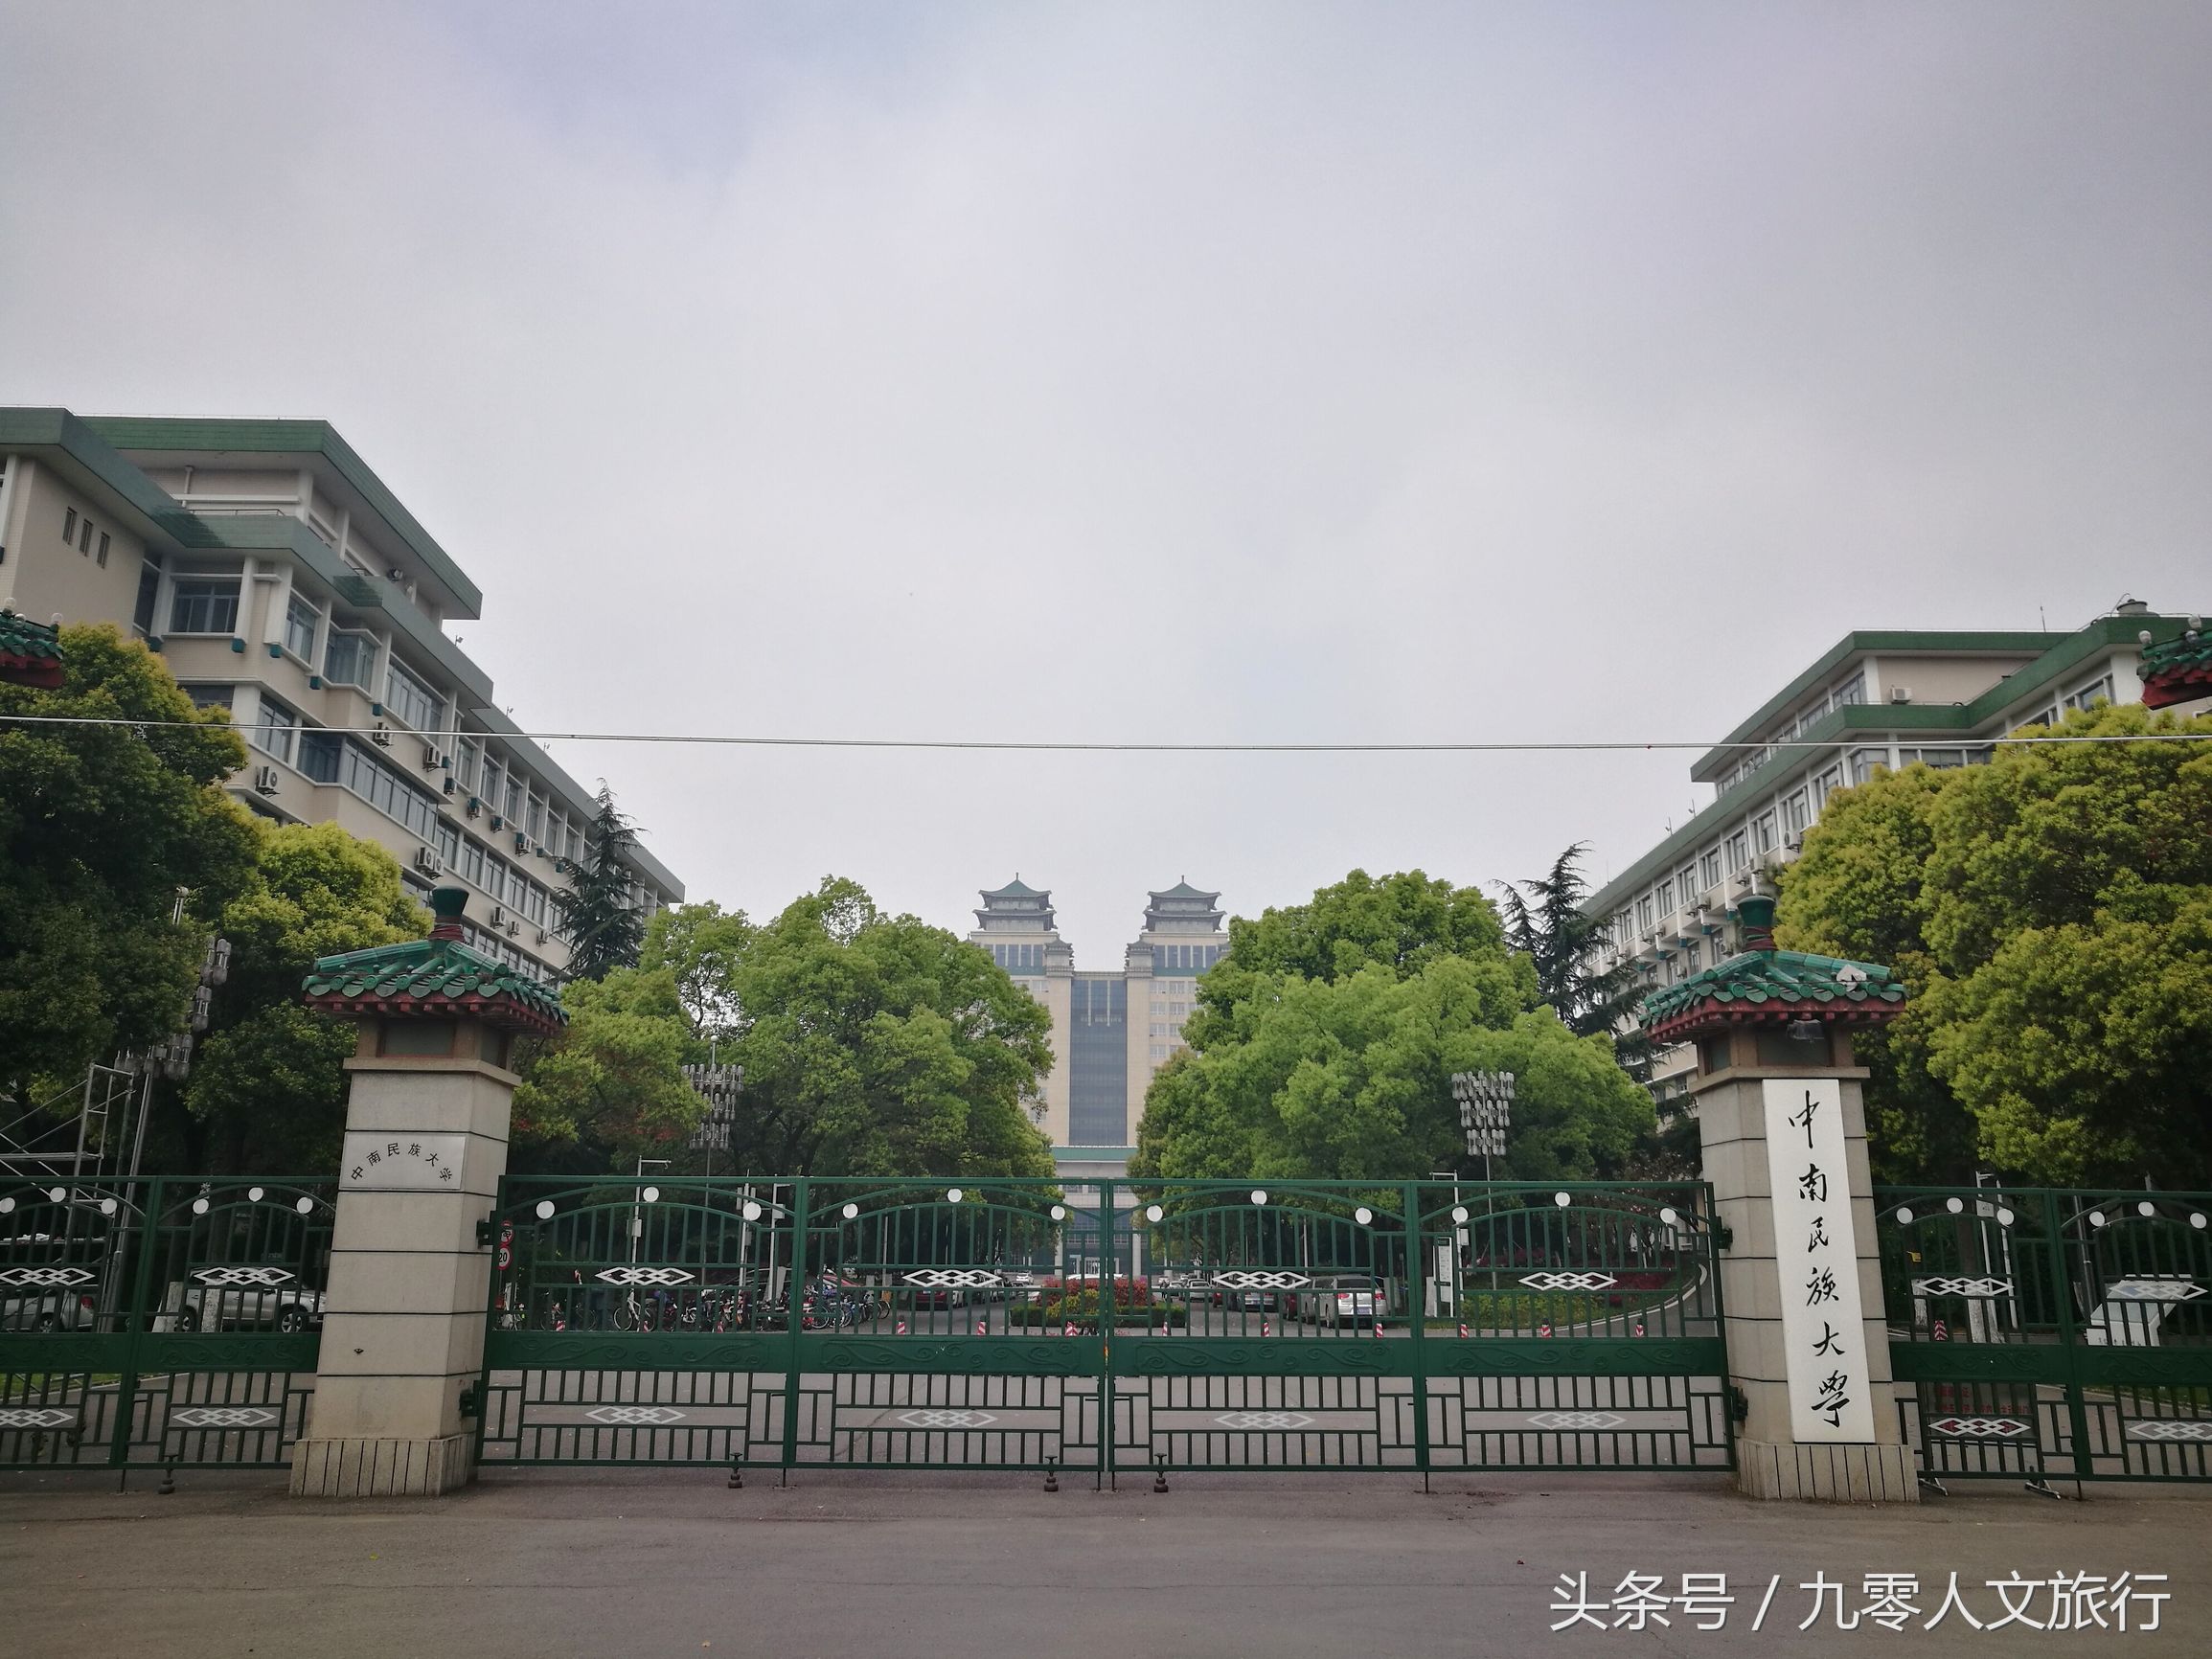 中南民族大学是一所除军事学之外拥有所有学科门类的综合性民族高等